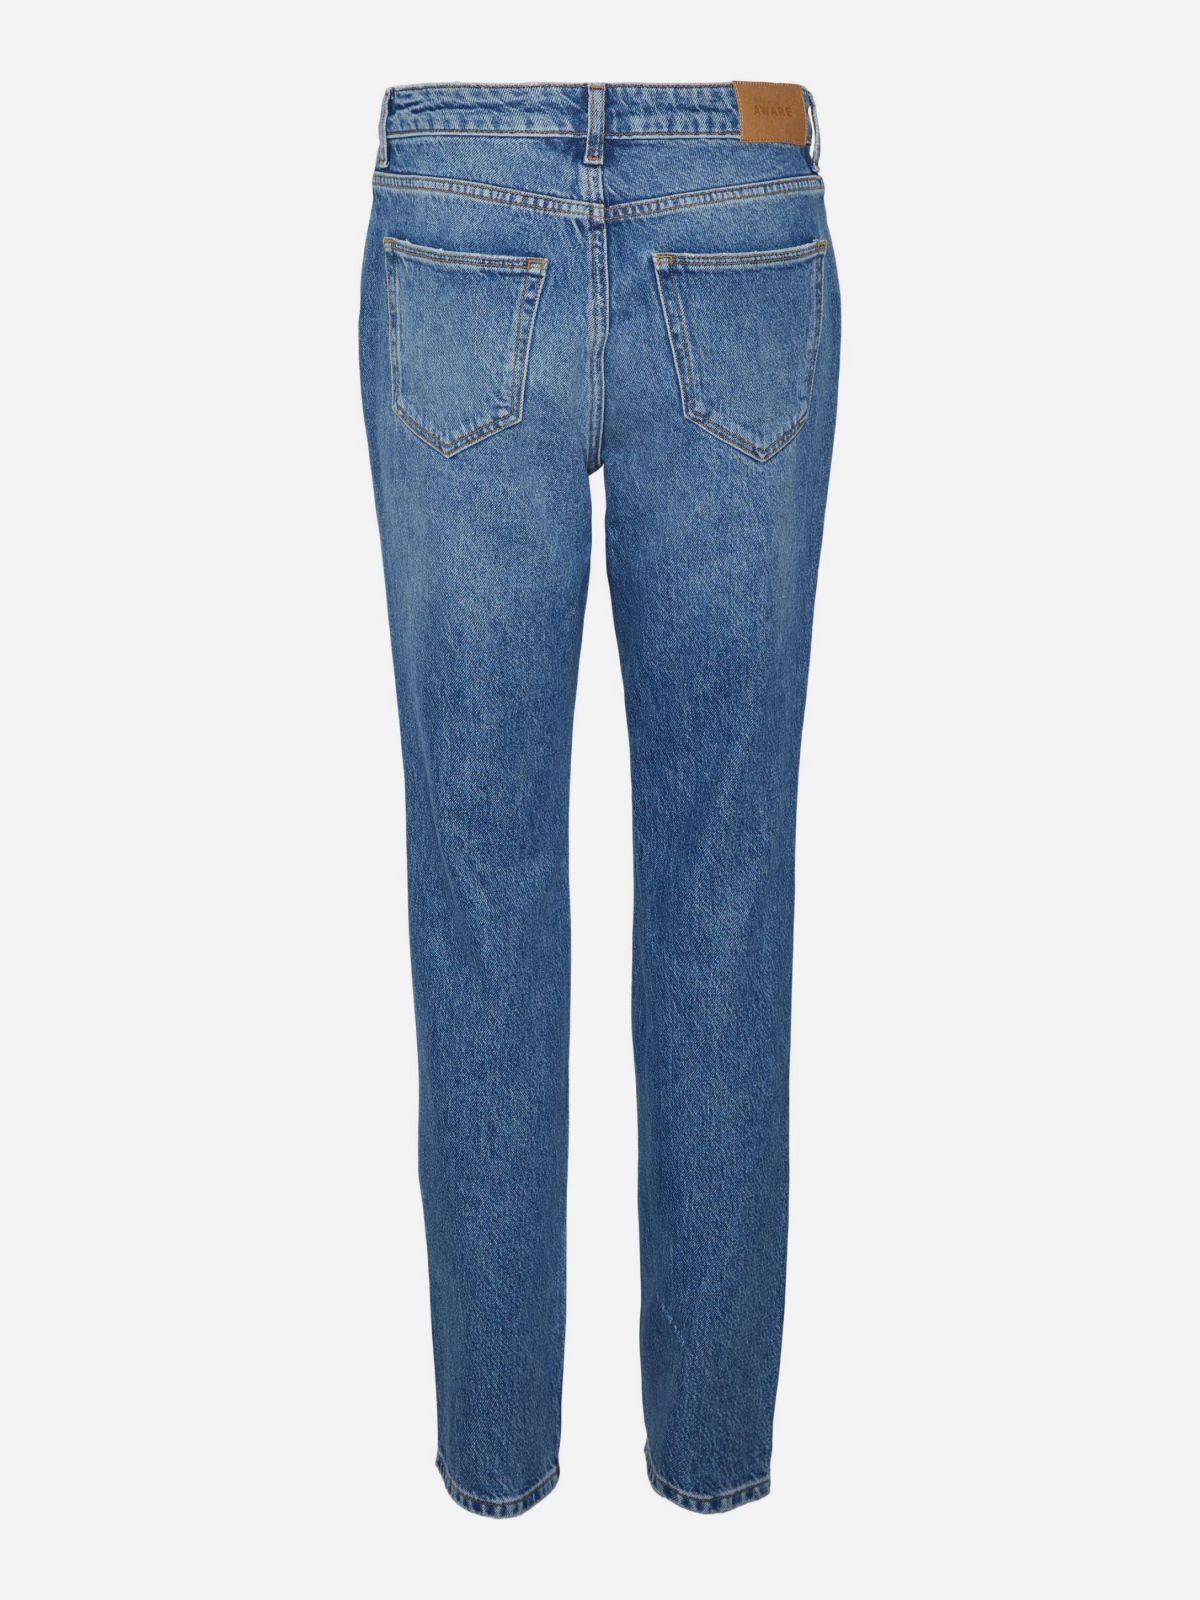  ג'ינס ארוך בגזרה ישרה / נשים של VERO MODA